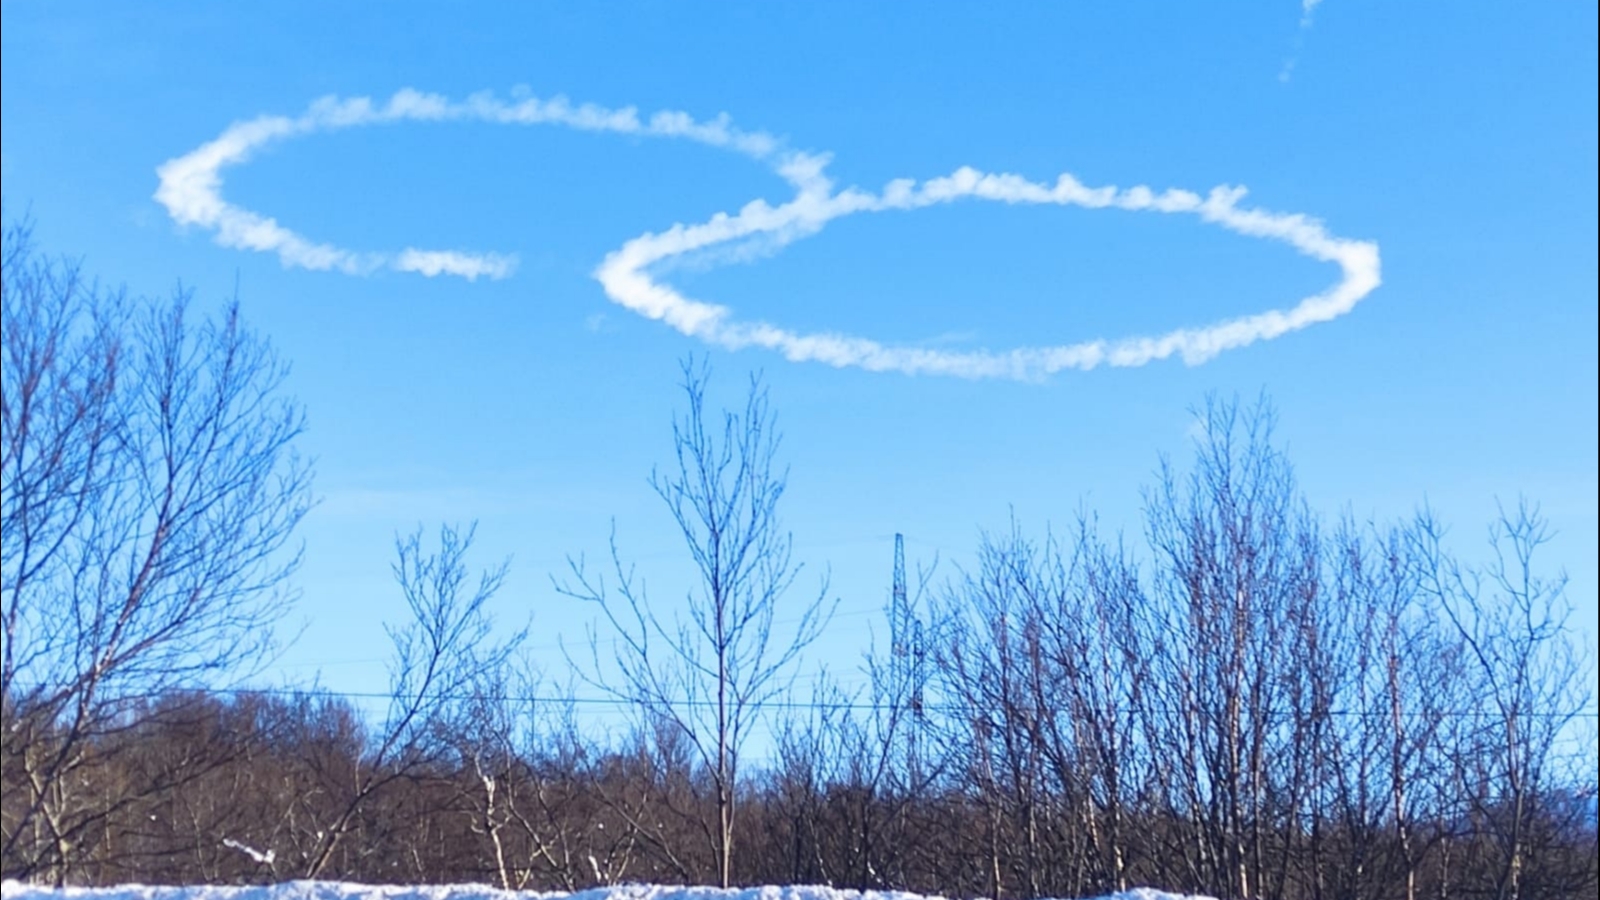 Лётчики нарисовали поздравление с 8 марта в небе над Заполярьем